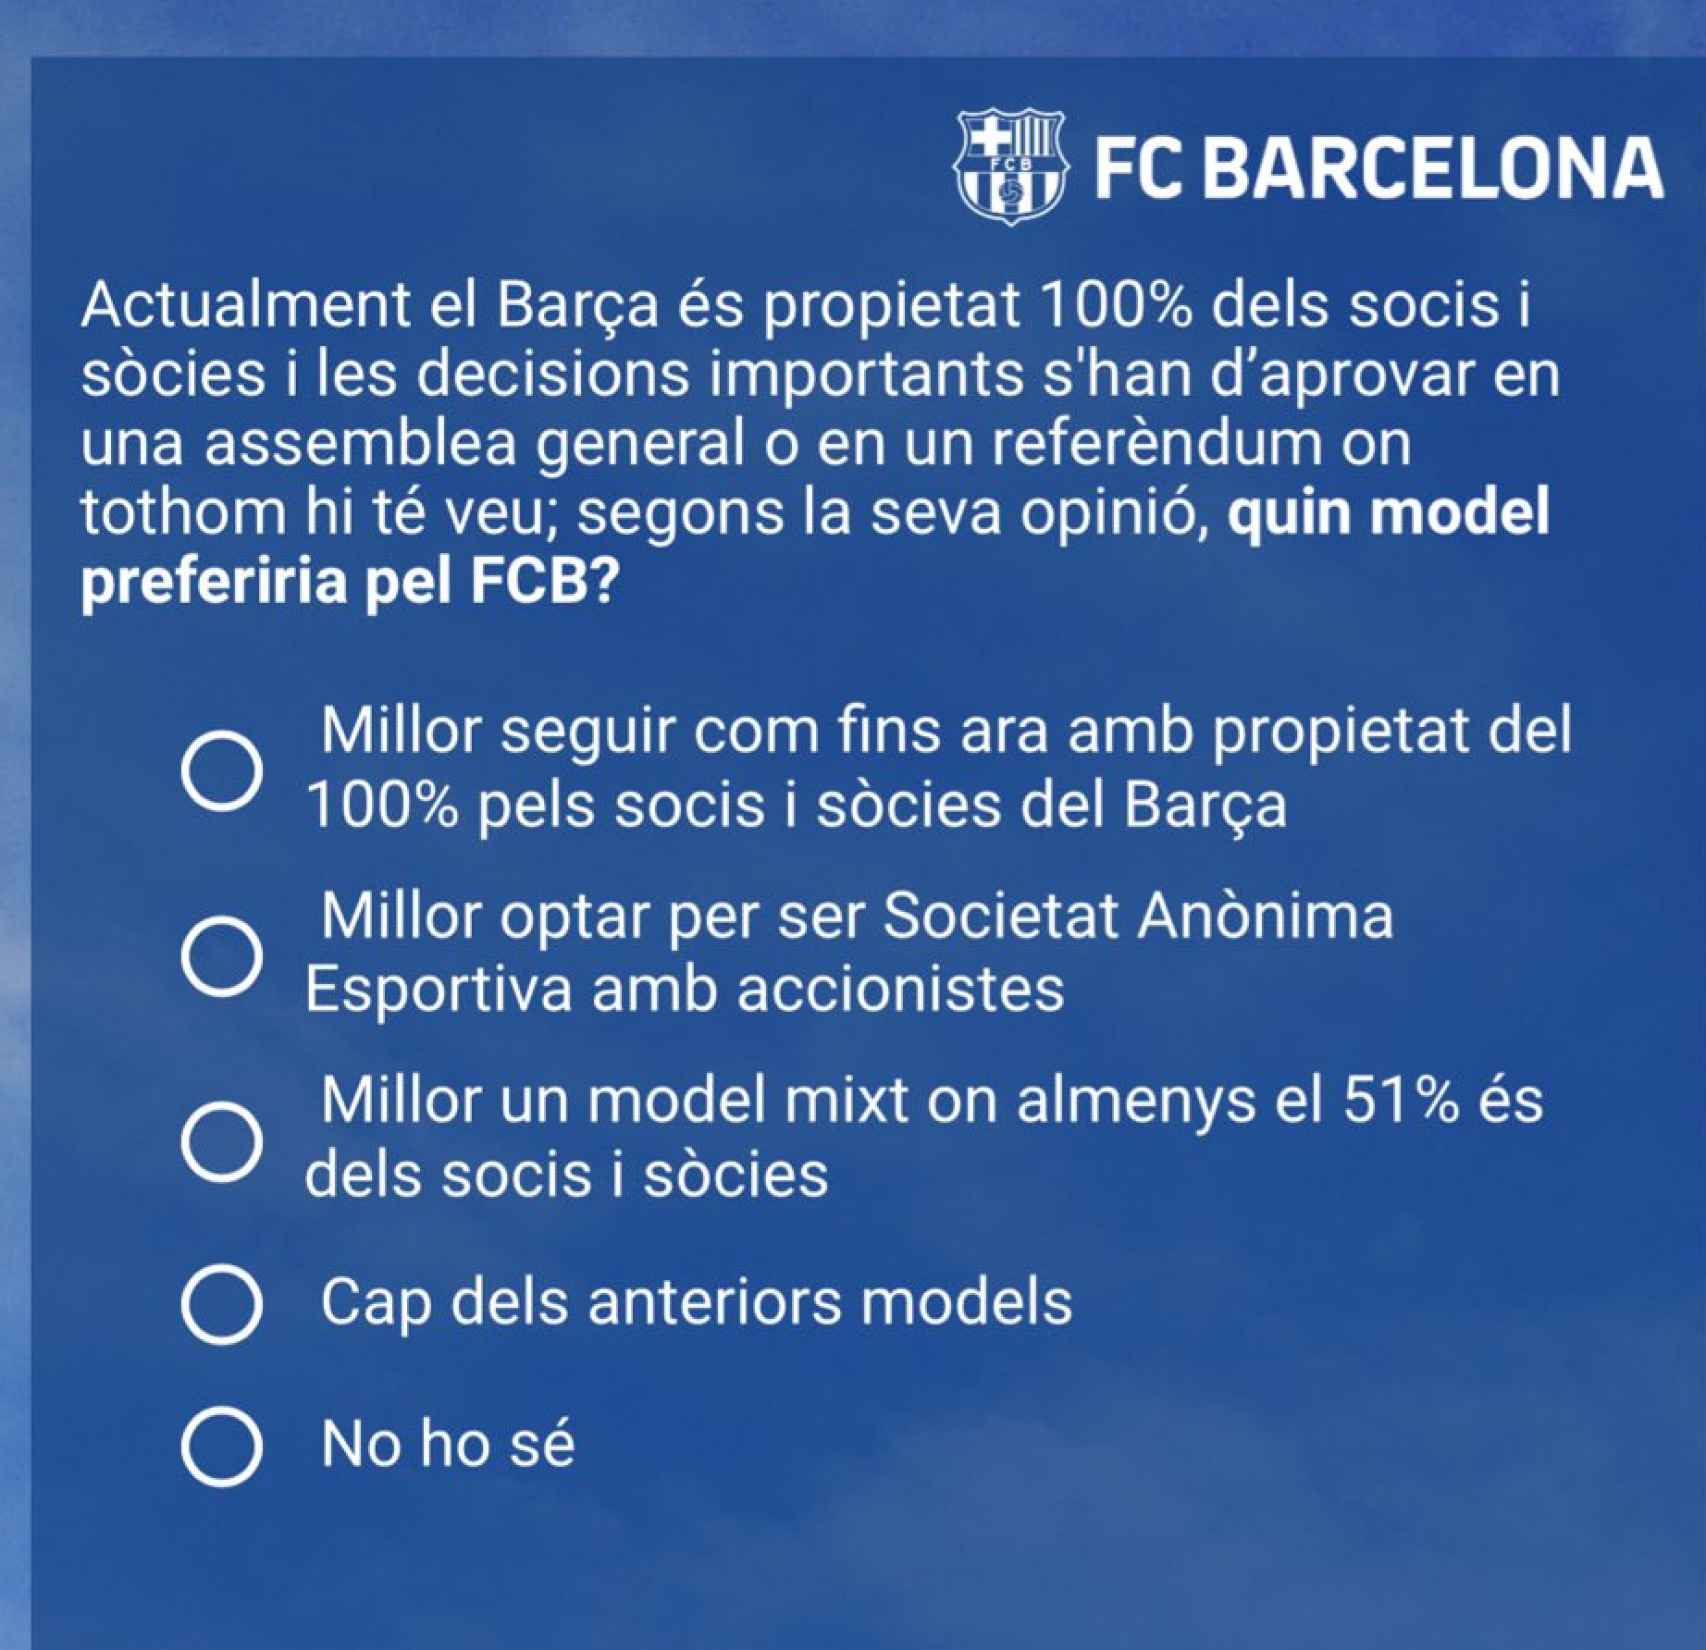 El Barça consulta a los socios sobre un hipotético cambio de propiedad